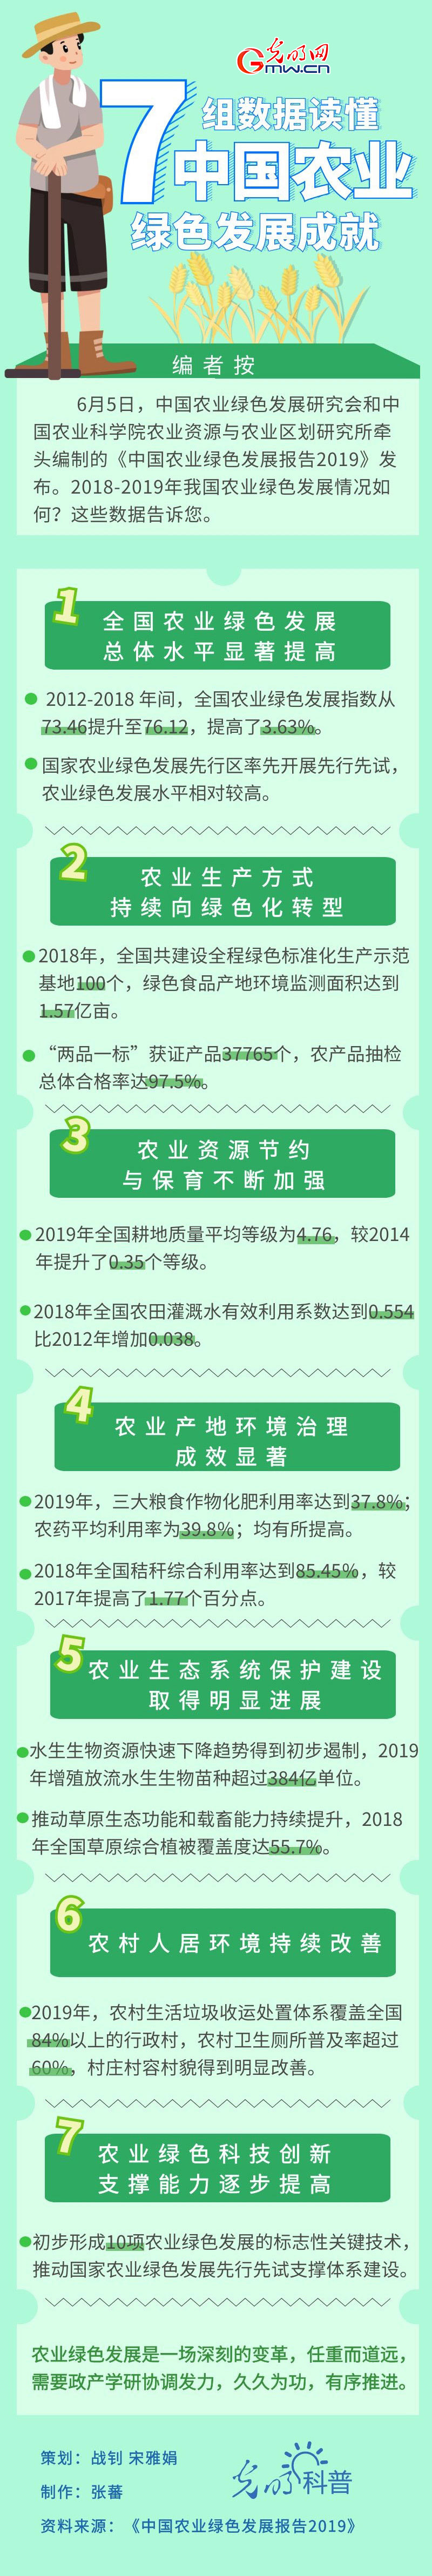 图解 | 7组数据读懂中国农业绿色发展成就